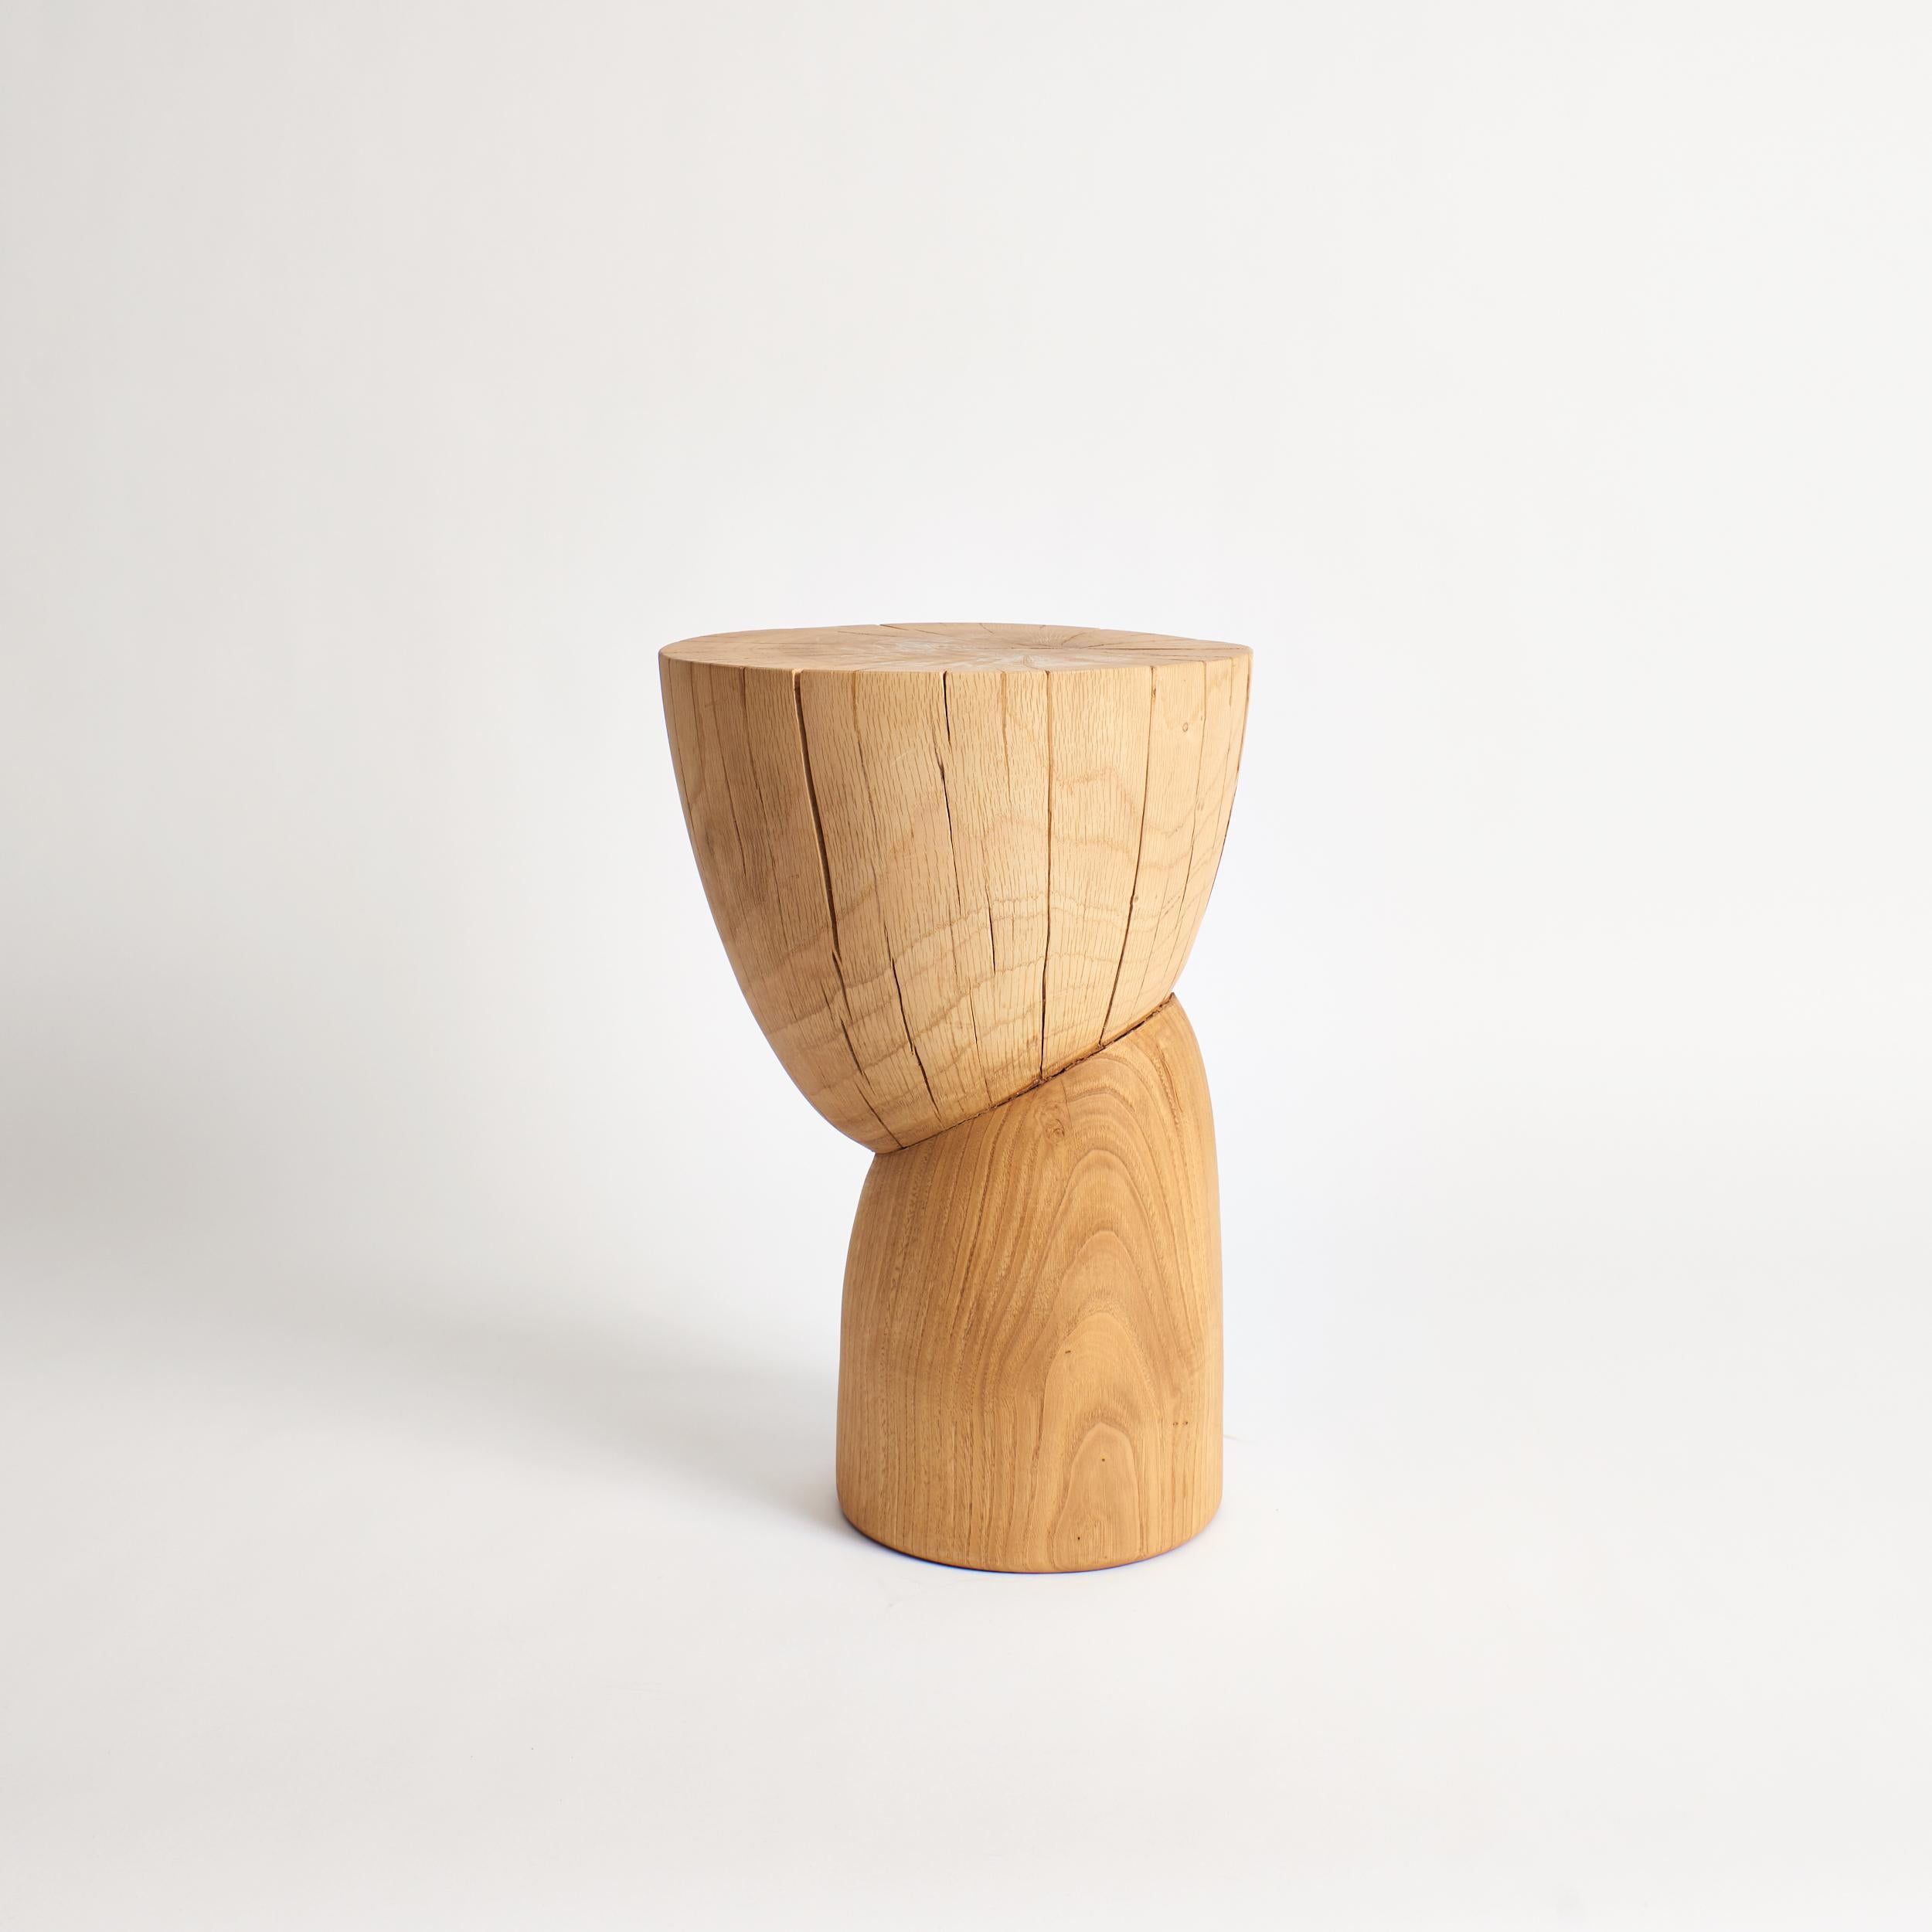 Table d'appoint en bois naturel par Project 213A
Dimensions : D 30 x L 30 x H 43,5 cm
MATERIAL : Bois de châtaignier. 

Cette table d'appoint sculpturale est sculptée à la main par des artisans locaux au Portugal à partir de bois massif.